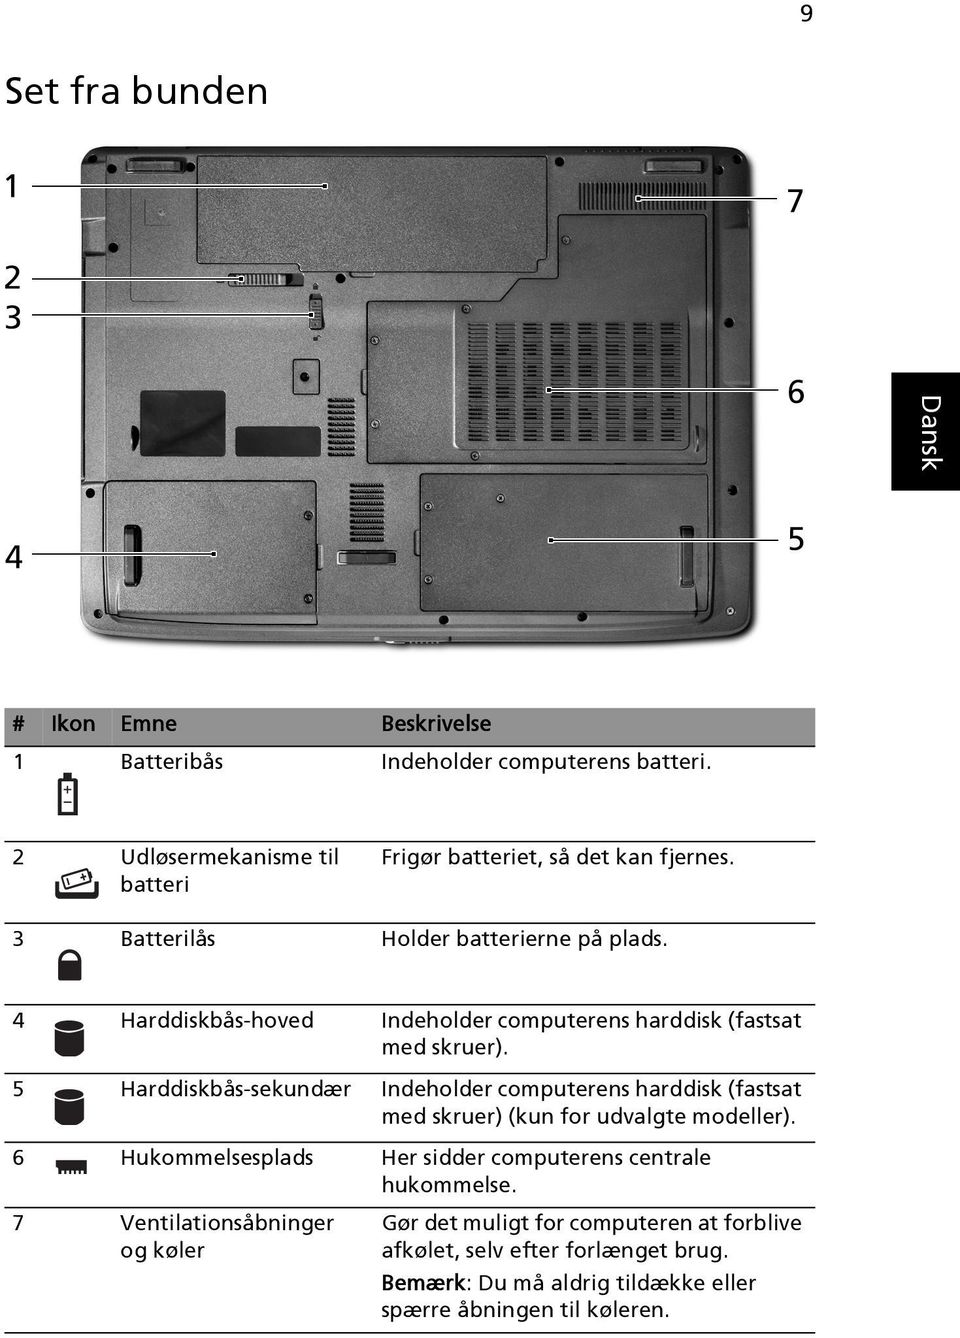 5 Harddiskbås-sekundær Indeholder computerens harddisk (fastsat med skruer) (kun for udvalgte modeller).